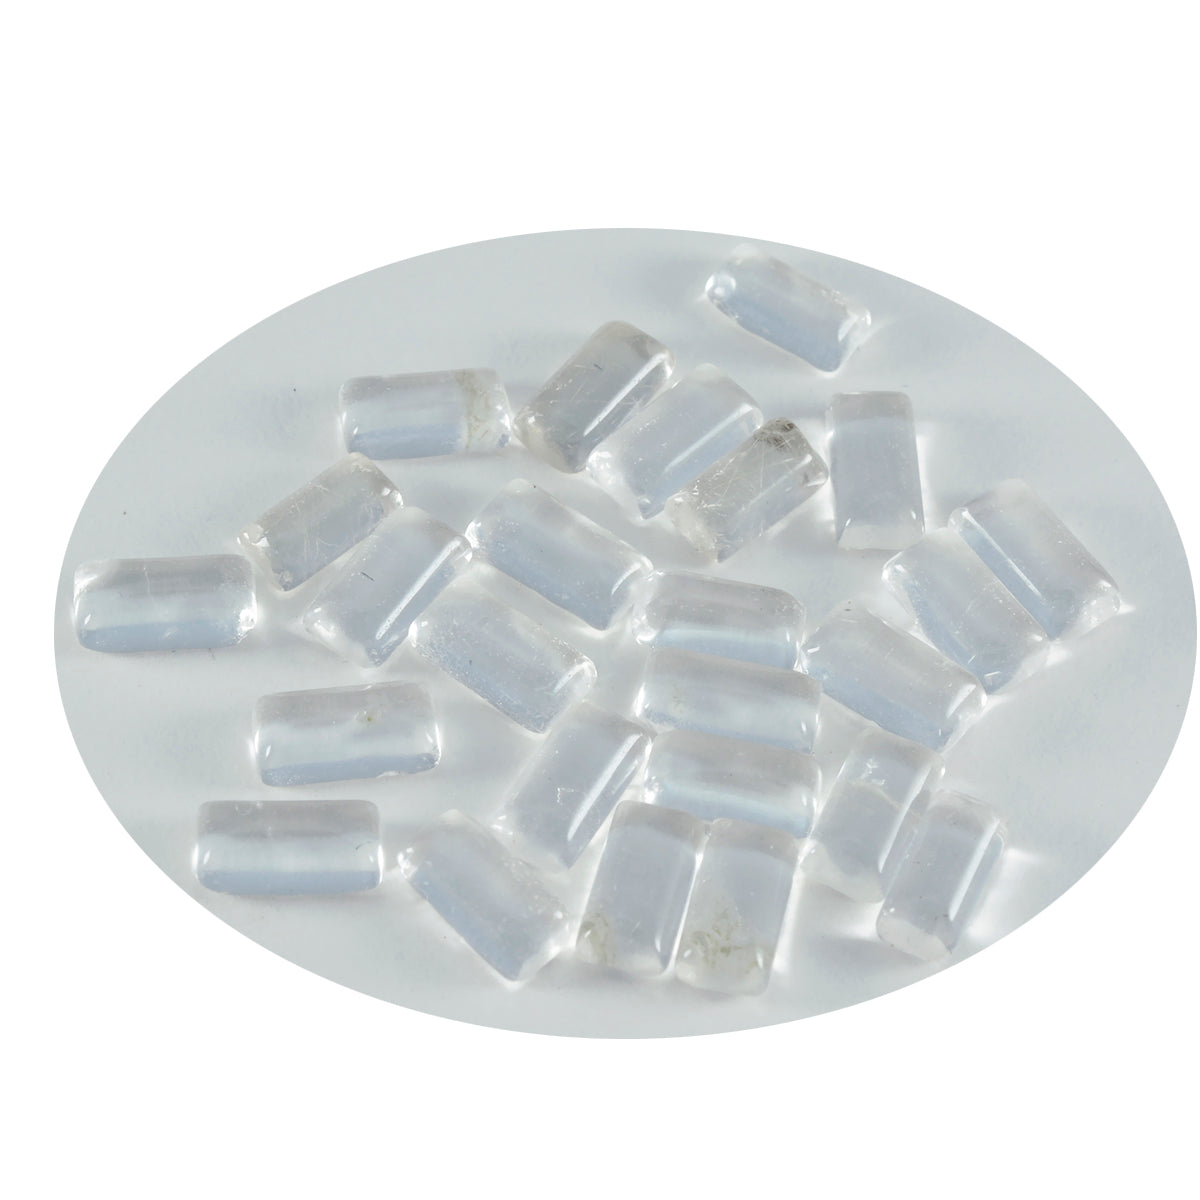 riyogems 1pc cabochon di quarzo cristallo bianco 3x6 mm forma baguette gemma sciolta di qualità aaa